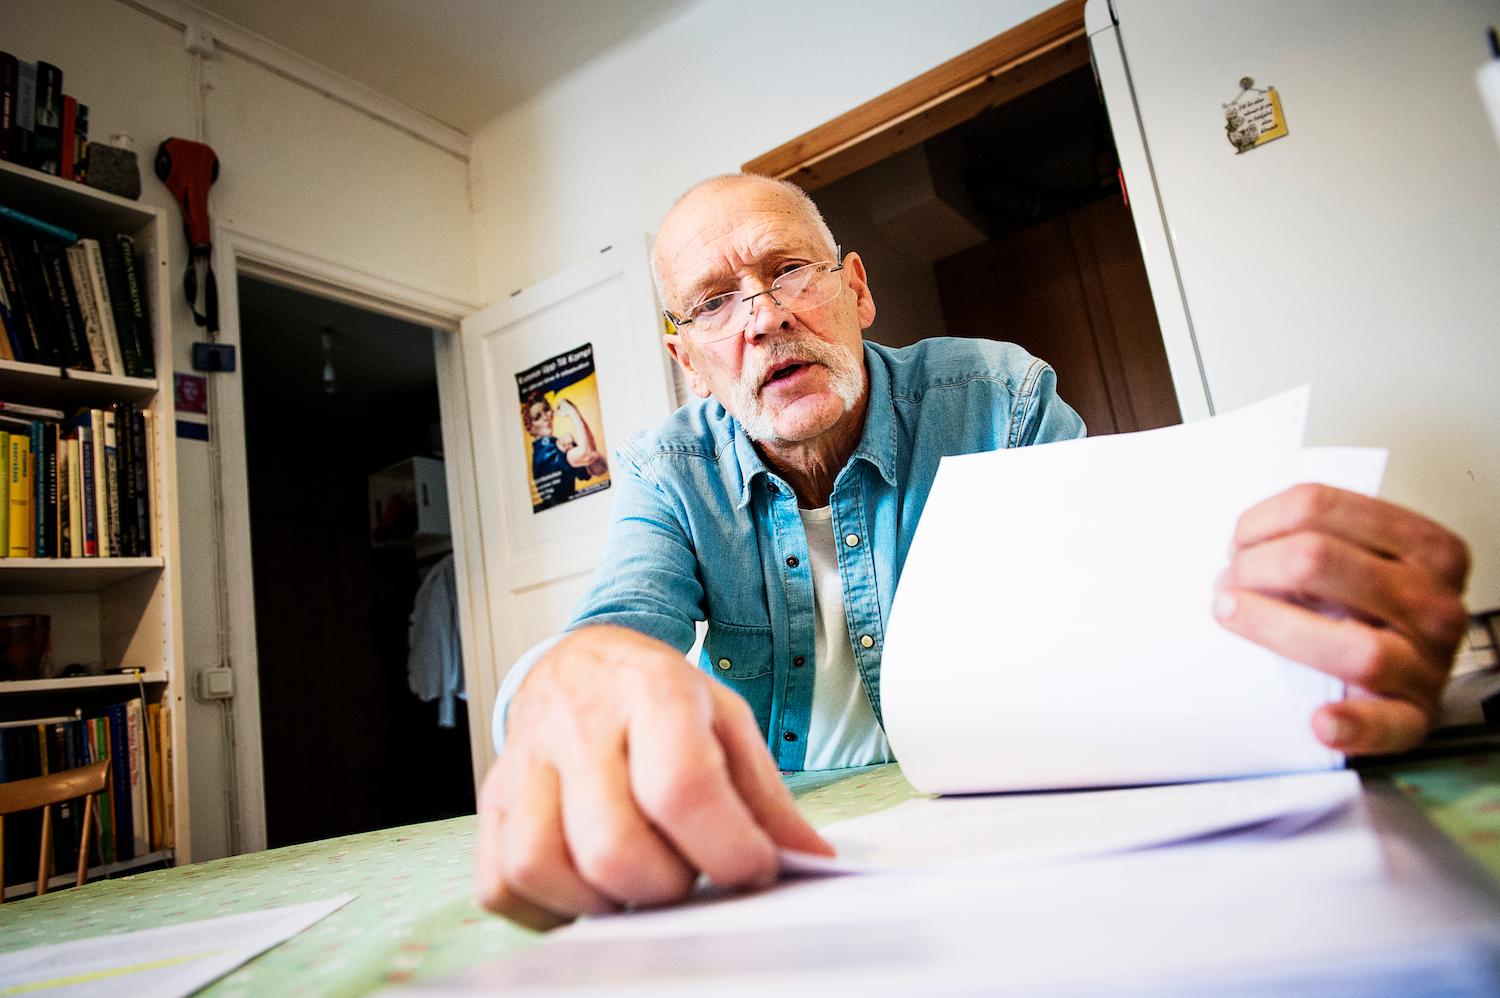 Arbetsskadade Leif Kåvestad, 72, kämpade flera år mot AFA för att få livränta och har hjälpt fyra andra män. Läs mer i Aftonbladets granskning "Blåsta på försäkringen"